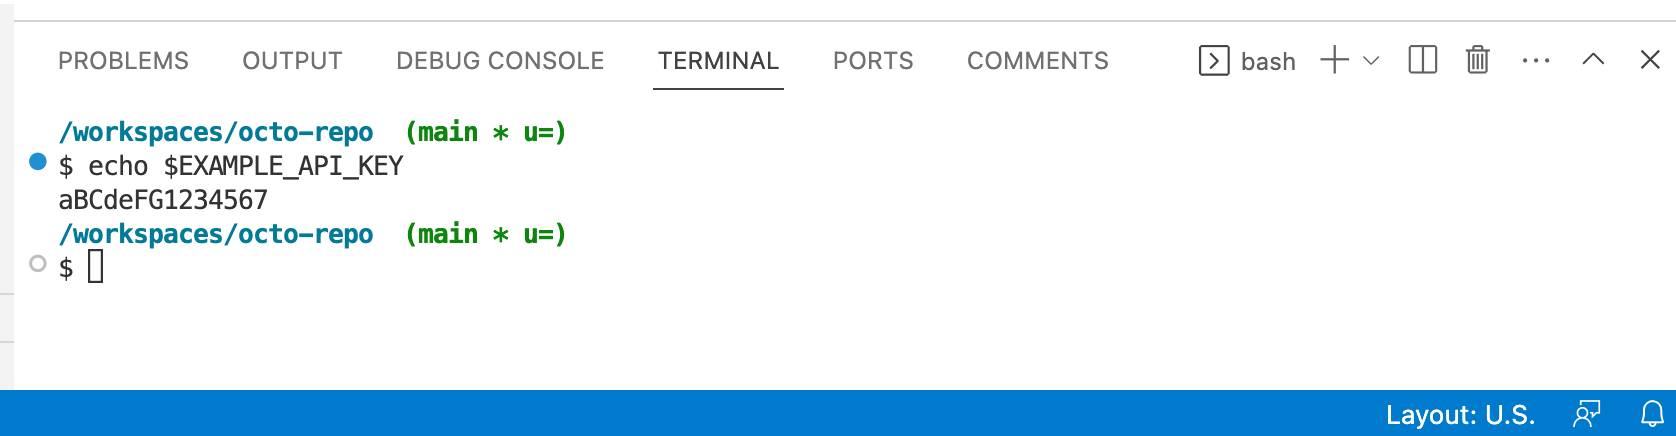 Captura de pantalla del terminal en VS Code. El comando "echo $EXAMPLE_API_KEY" ha devuelto "aBCdeFG1234567".